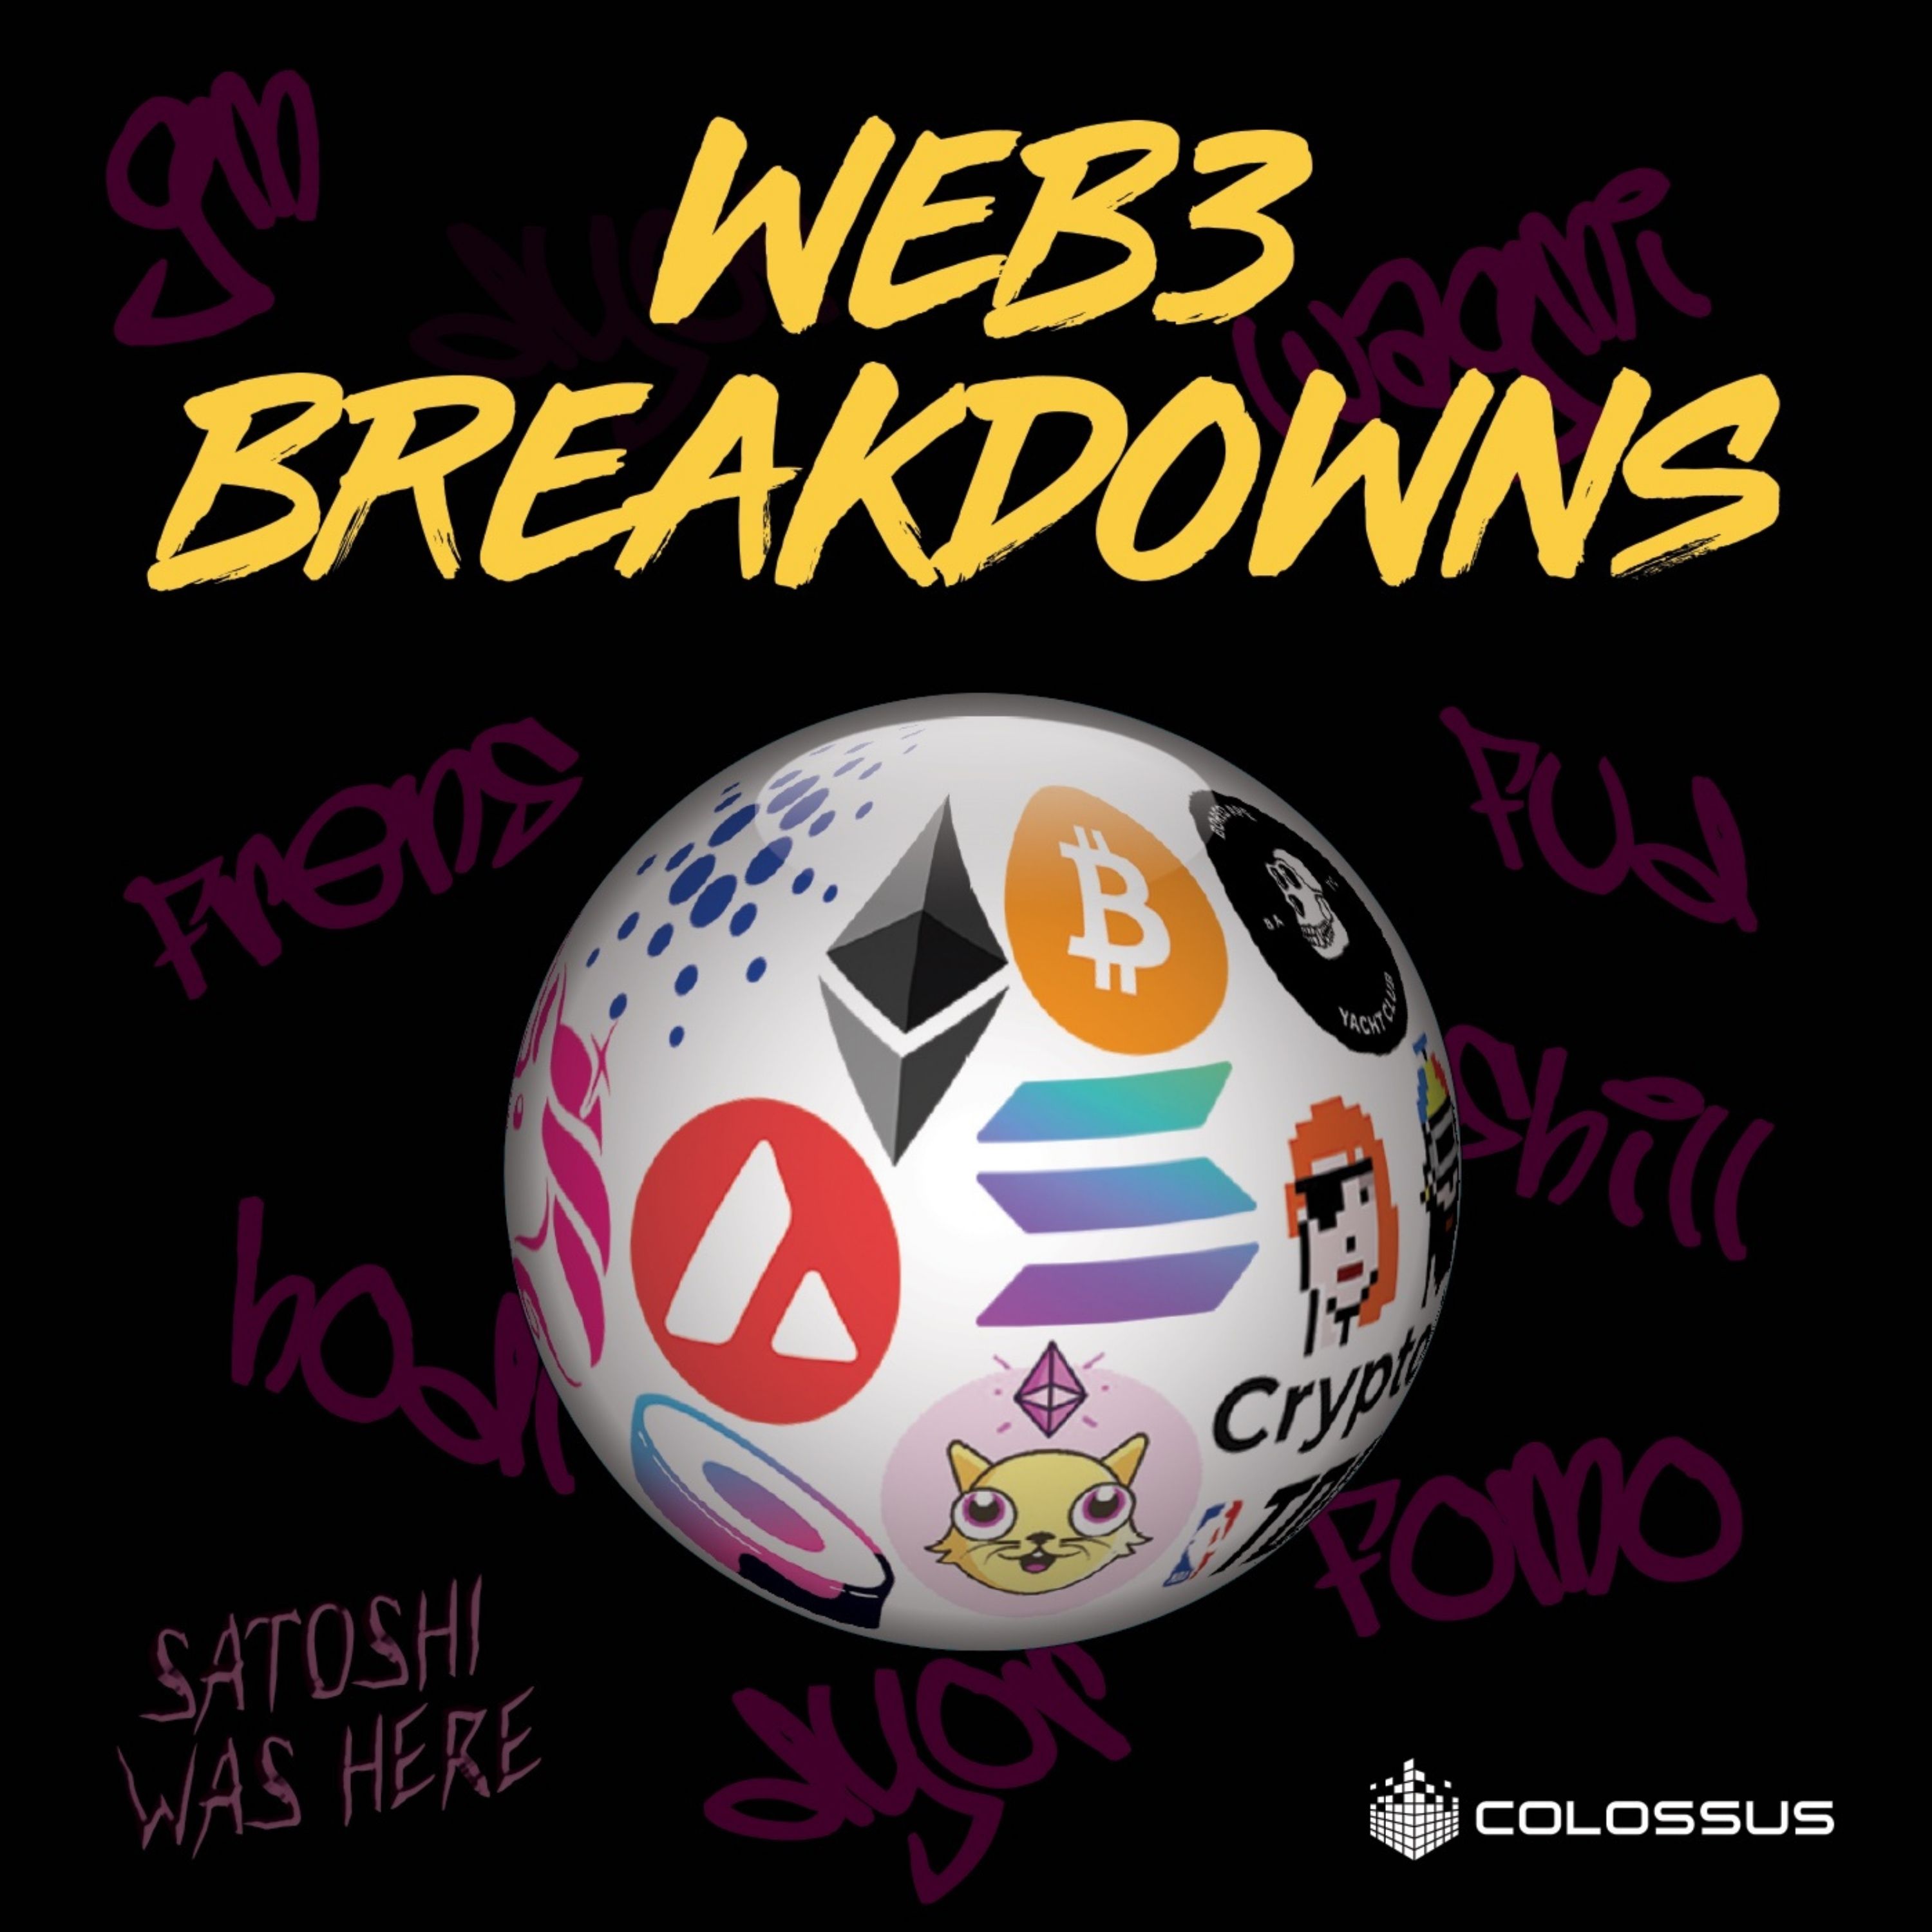 Web3 Breakdowns